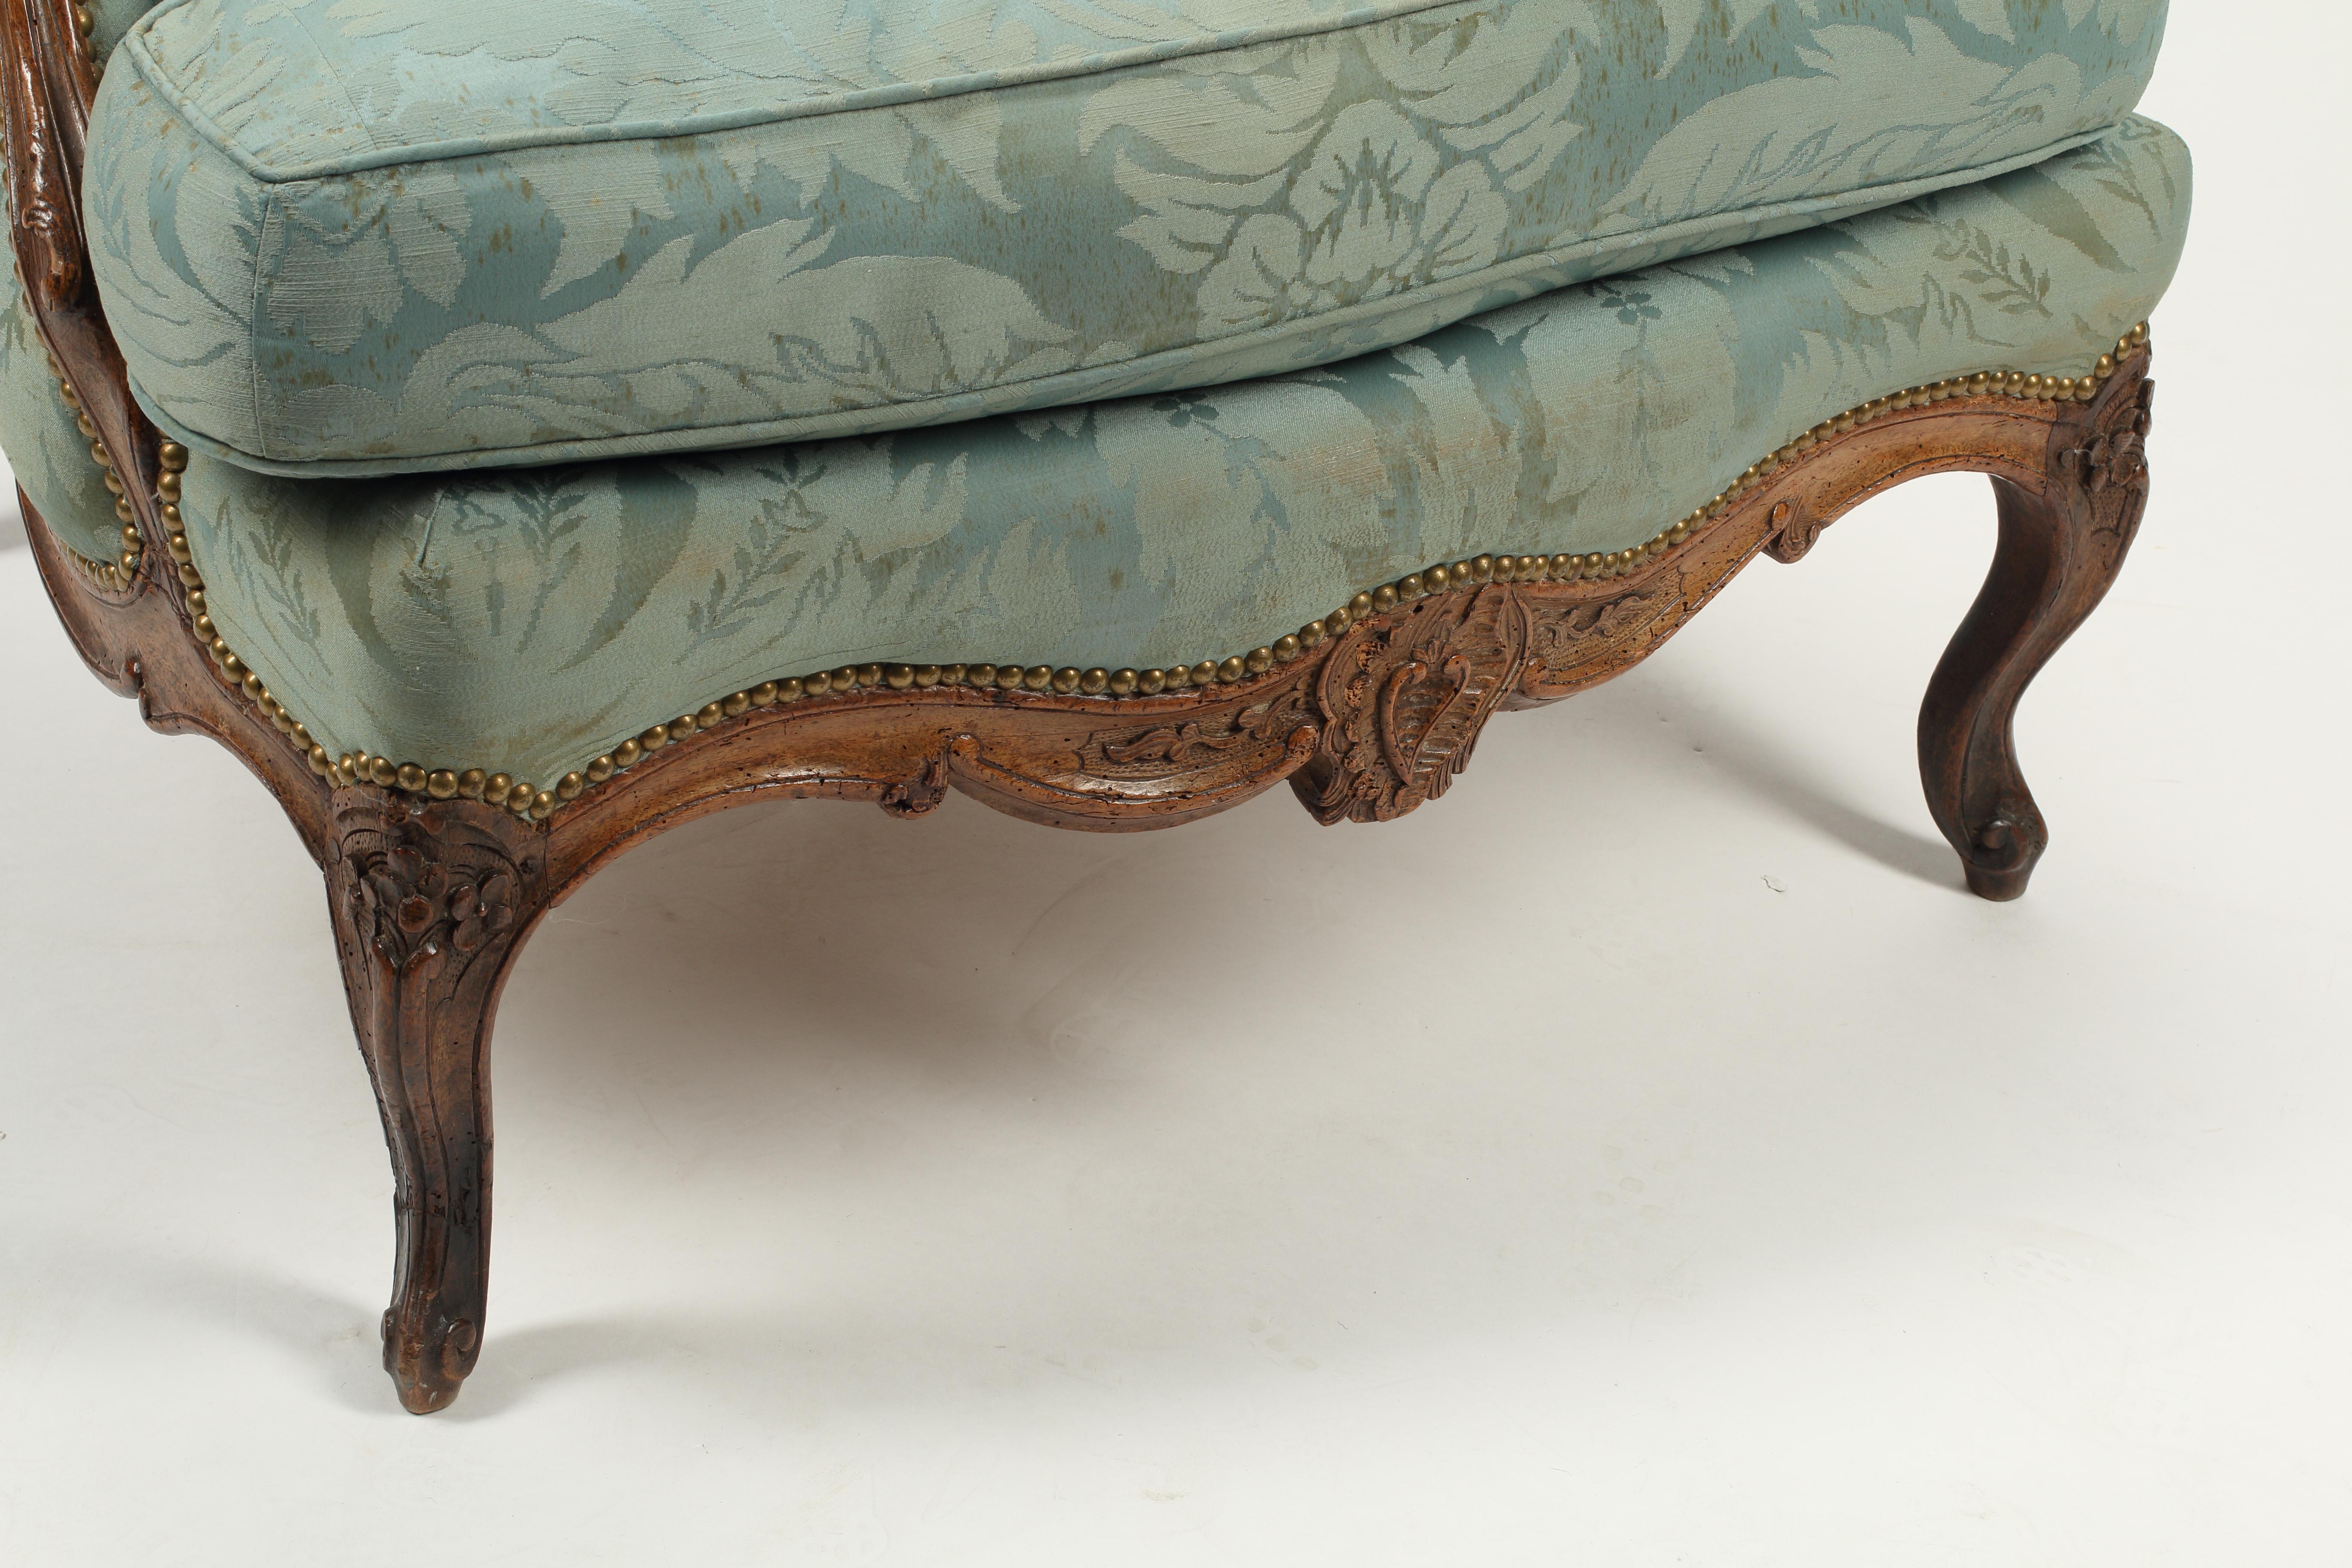 Diese Bergère aus französischem Nussbaumholz aus dem 18. Jahrhundert ist ein beeindruckendes Beispiel für die Handwerkskunst und die Kunstfertigkeit dieser Zeit. Der französische Provinzstuhl ist aus massivem Nussbaumholz gefertigt und zeichnet sich